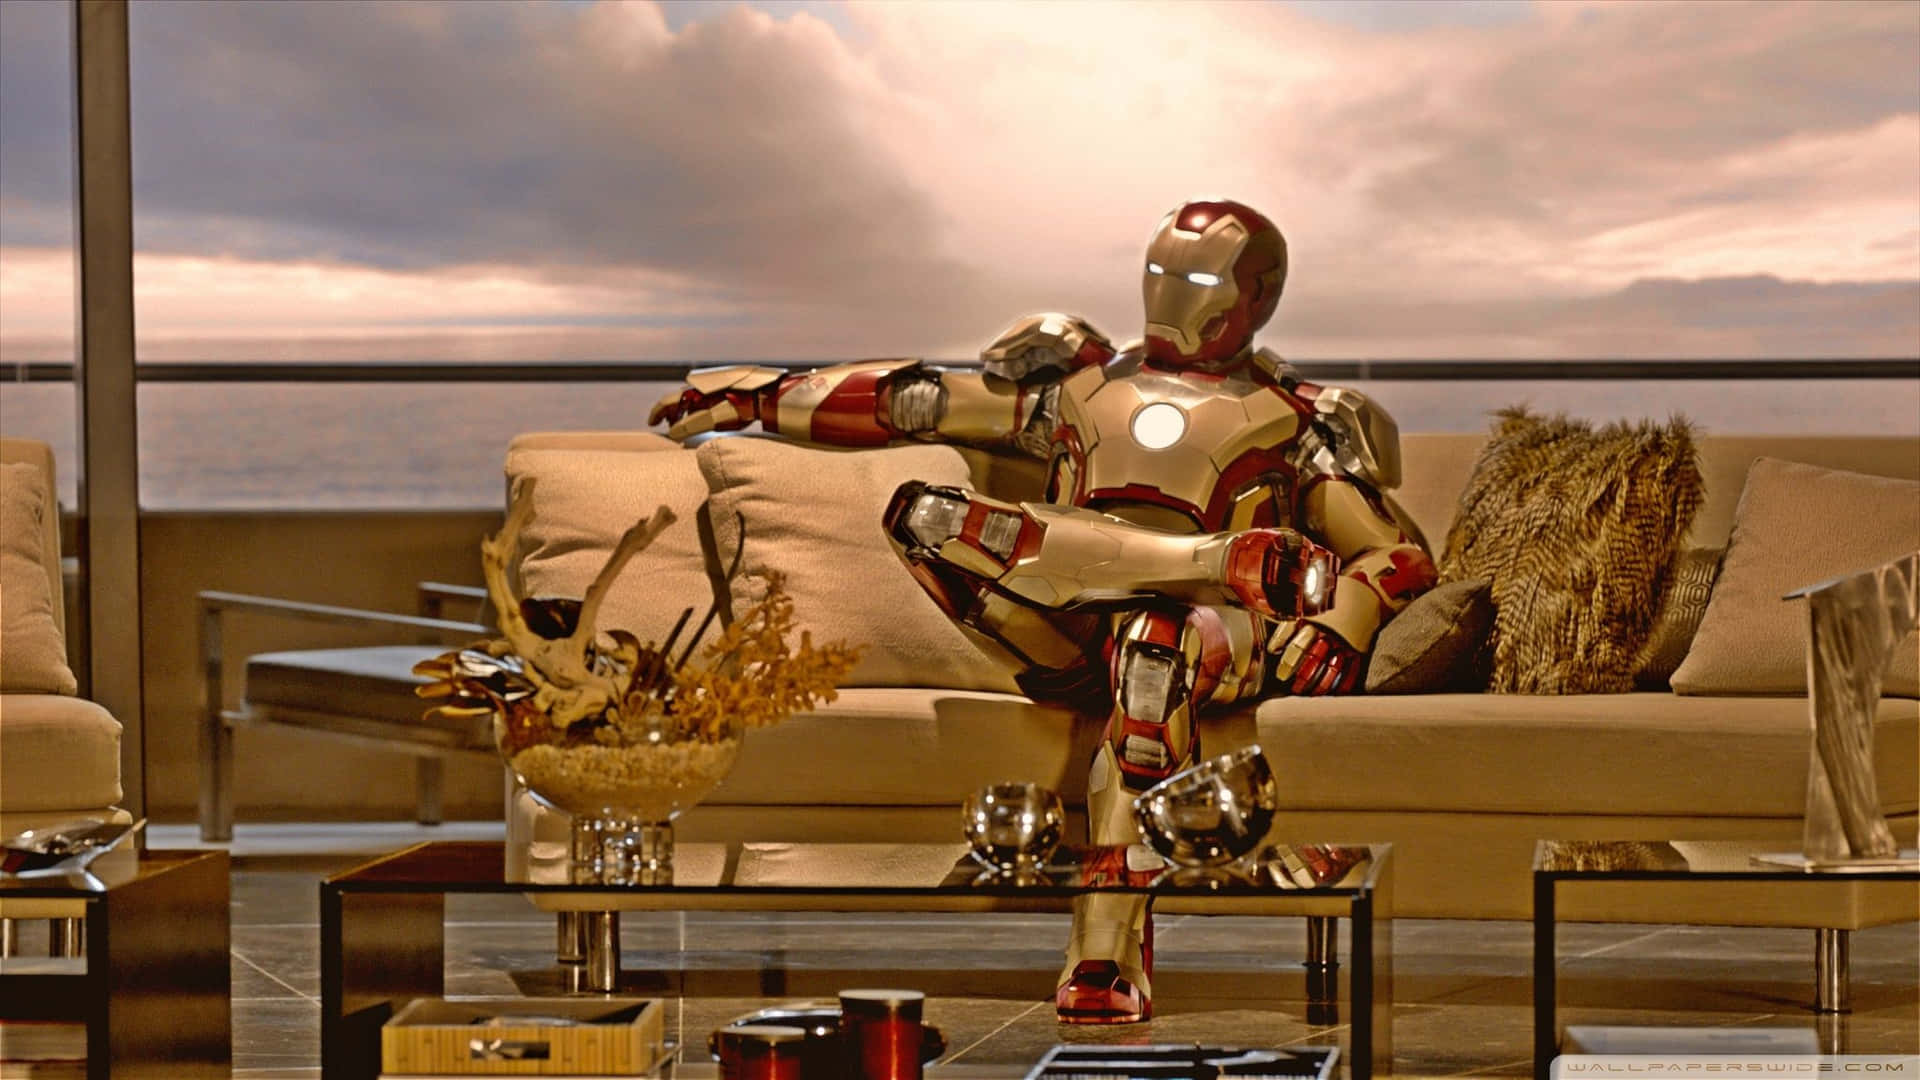 Iron Man 3 - Avengers 3 Background